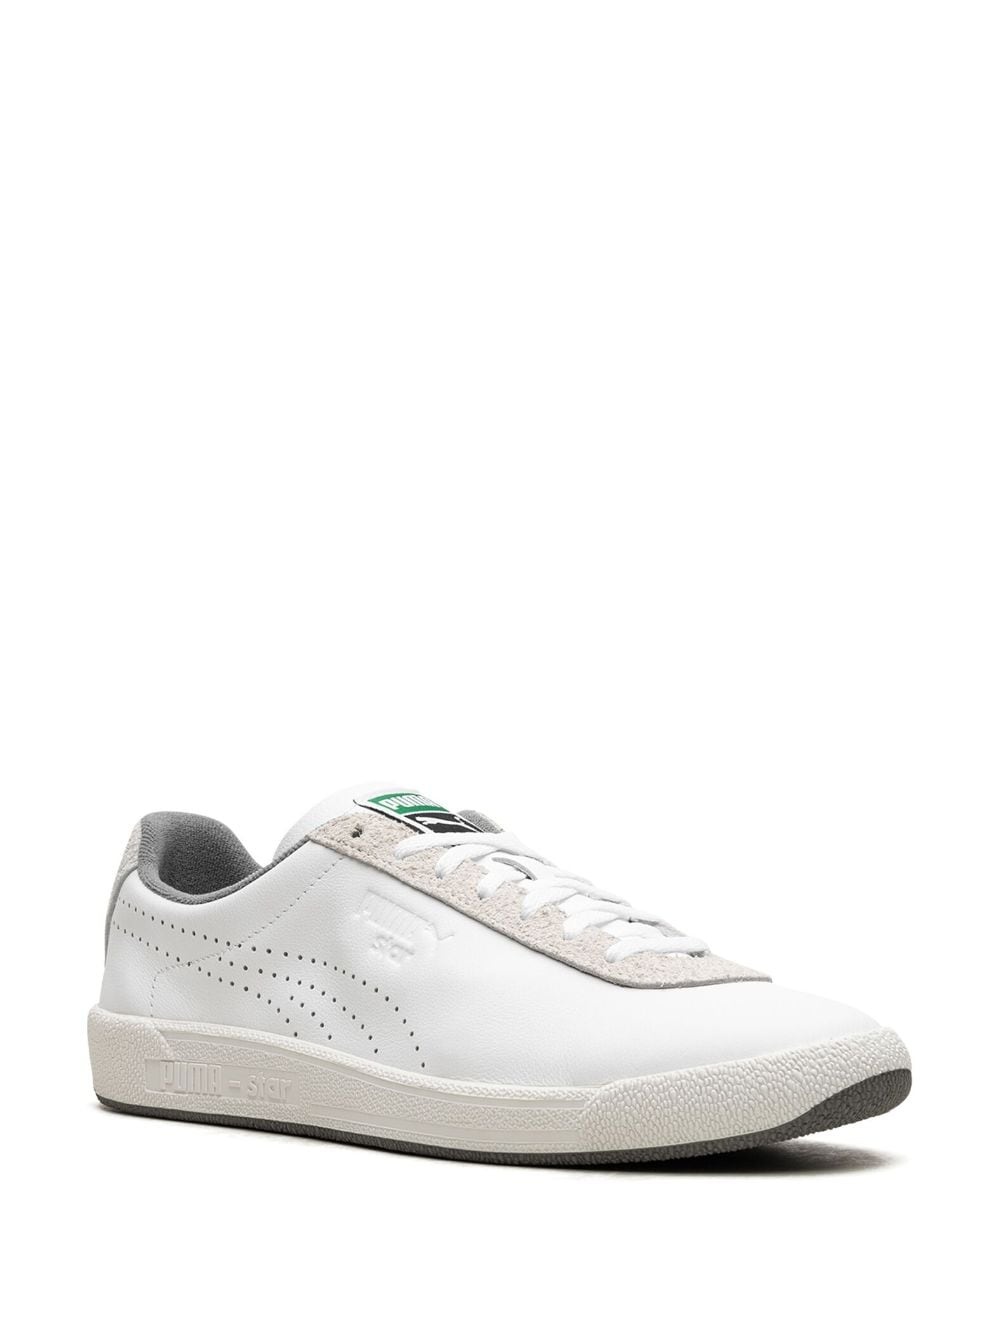 Star OG "White/Vapor Gray" sneakers - 2